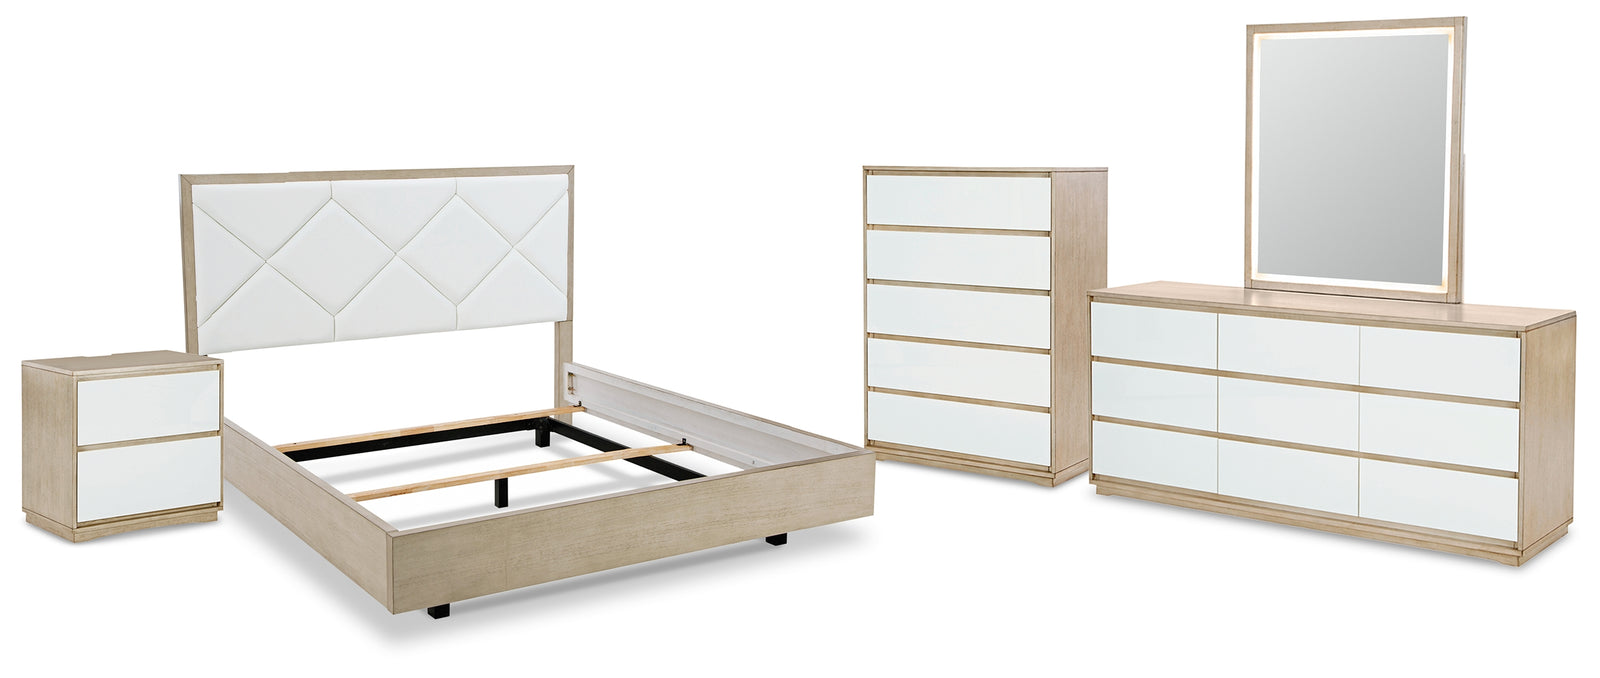 Wendora Bisque/white Upholstered Panel Bedroom Set - Ella Furniture